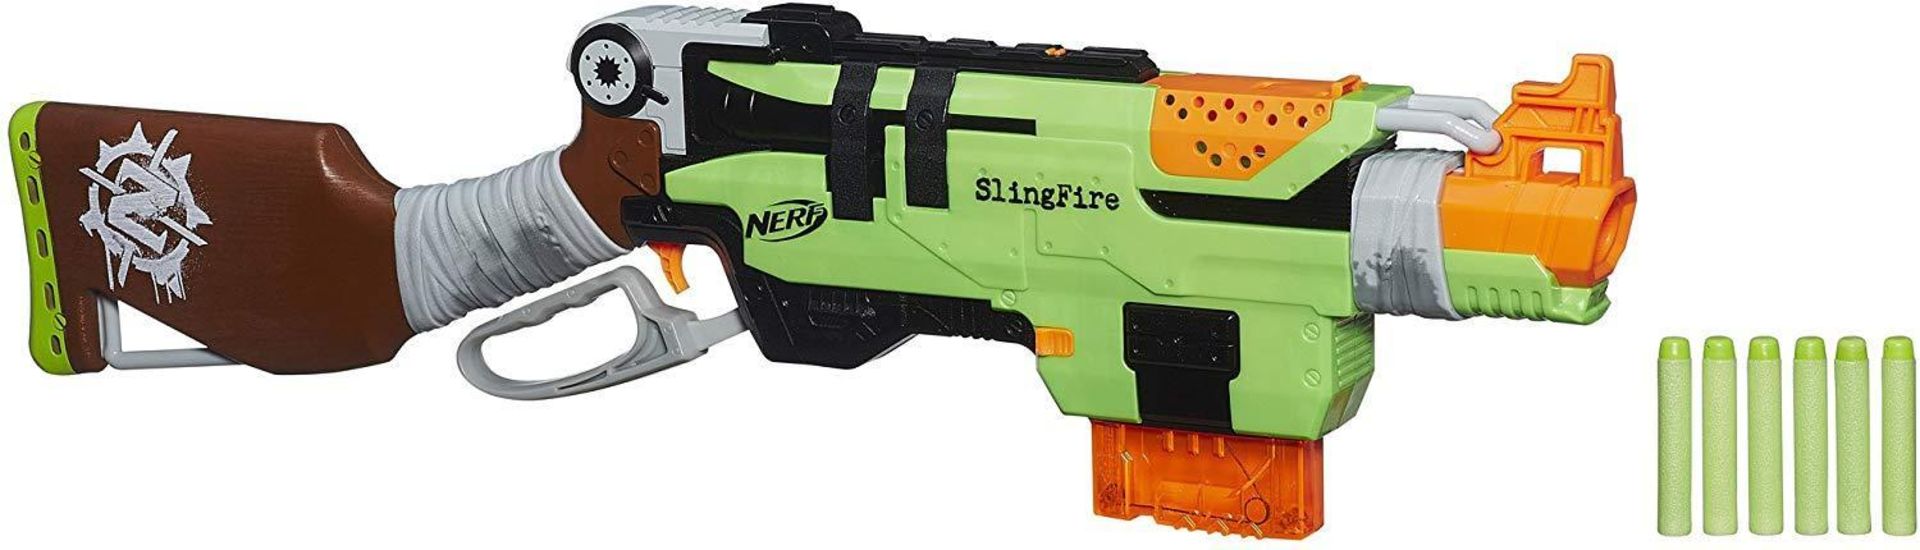 Nerf Zombie Strike Sling Fire, £40.00 RRP